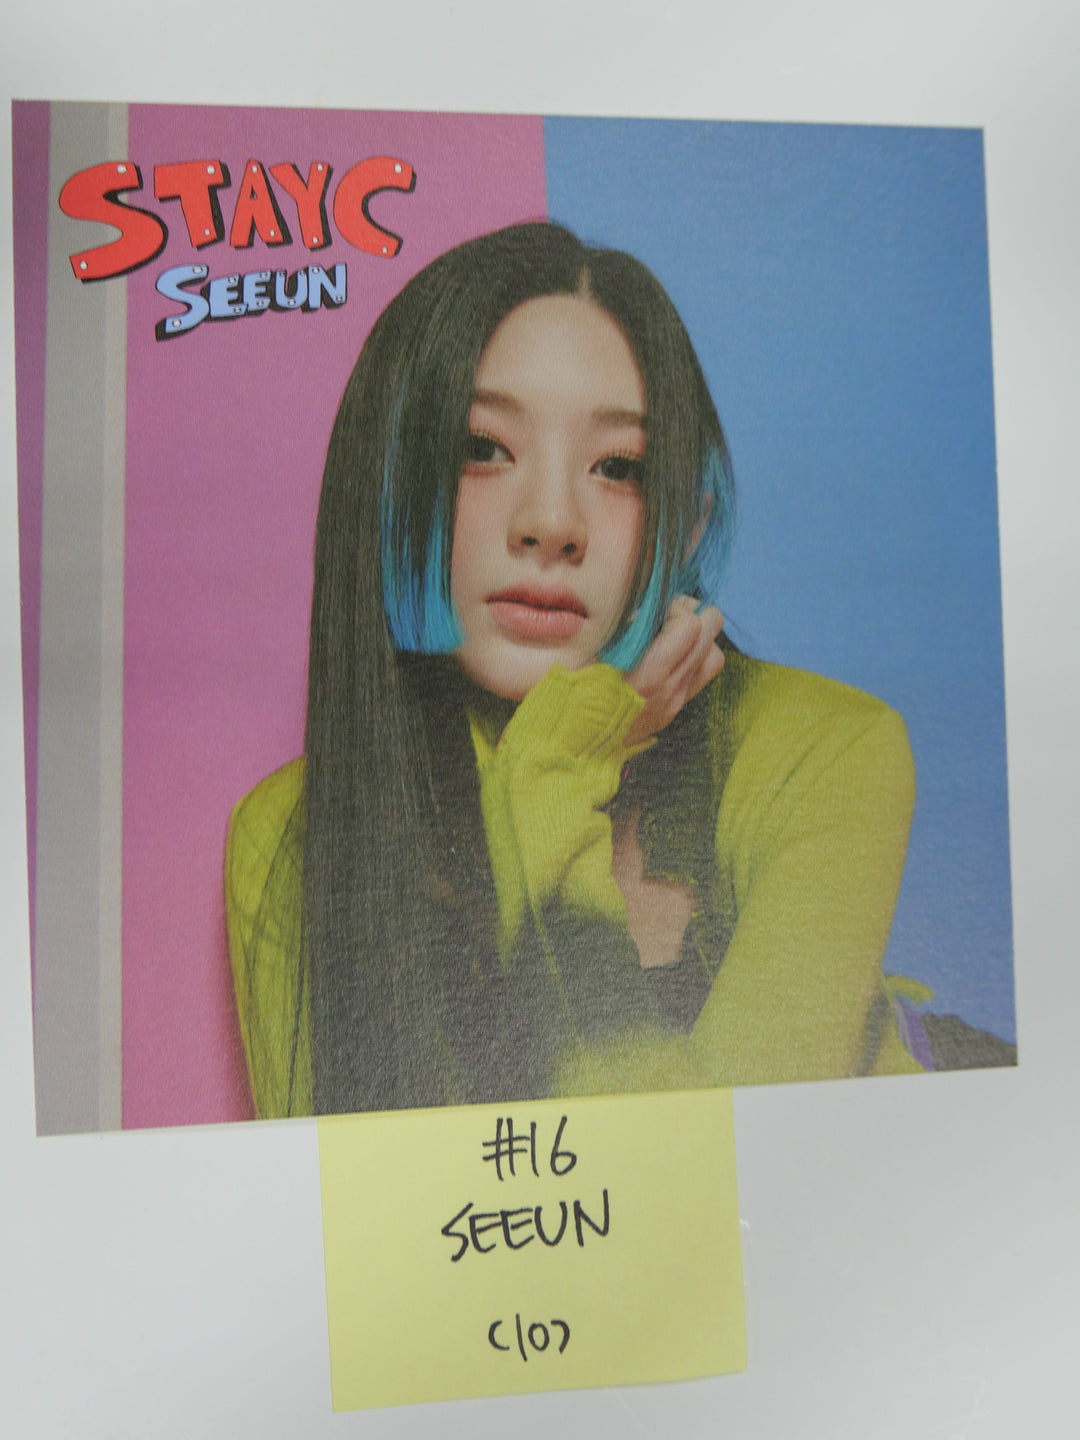 StayC [ASAP] - 공식 포토카드 (20-04-21 업데이트)